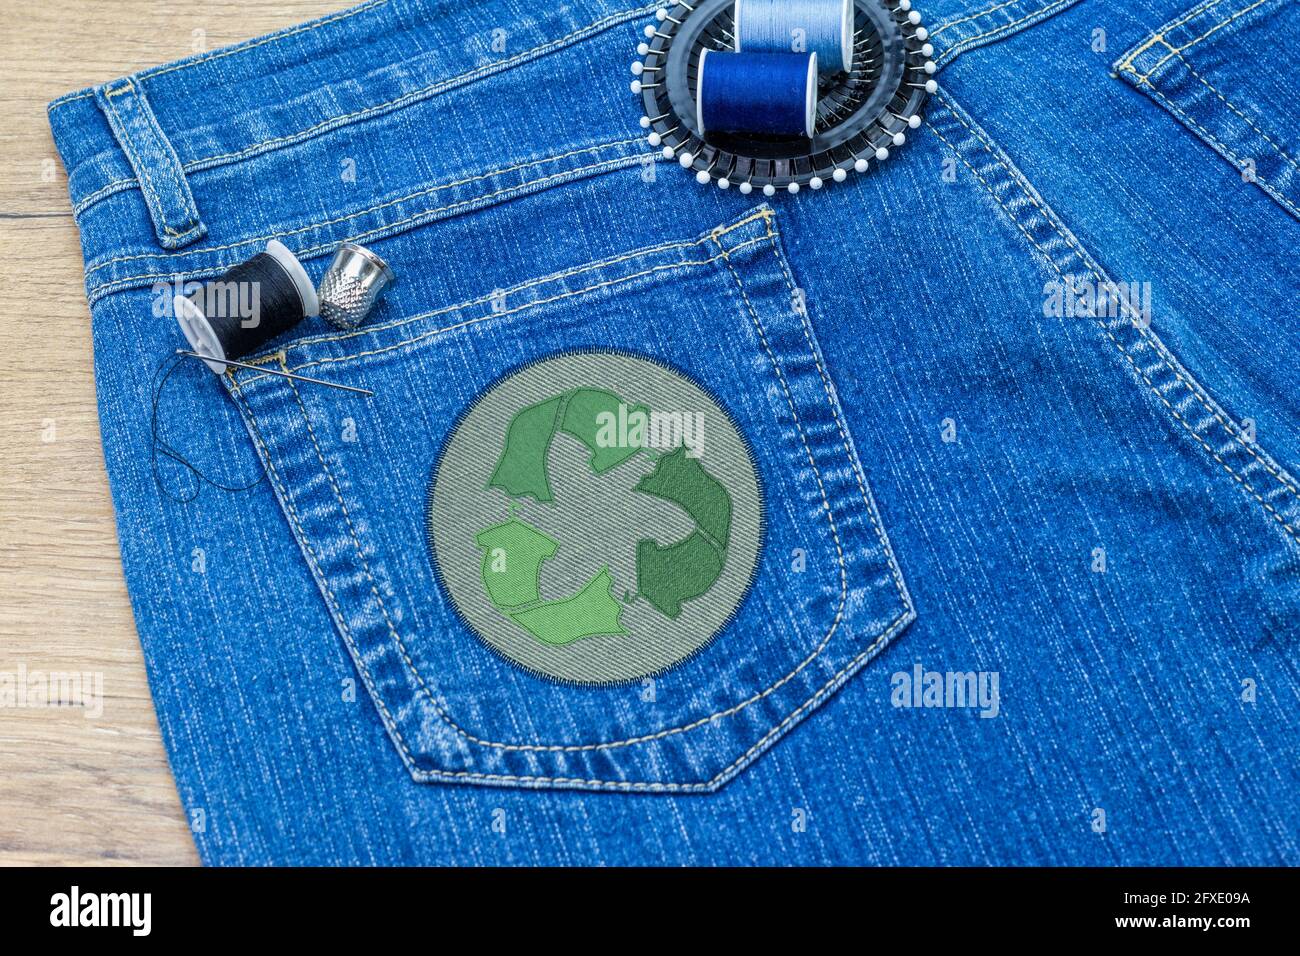 Recycle abbigliamento icona patch su jeans, moda sostenibile visibile mentding concetto, riparazione, riciclaggio, riutilizzo di vestiti e tessuti per ridurre gli sprechi Foto Stock